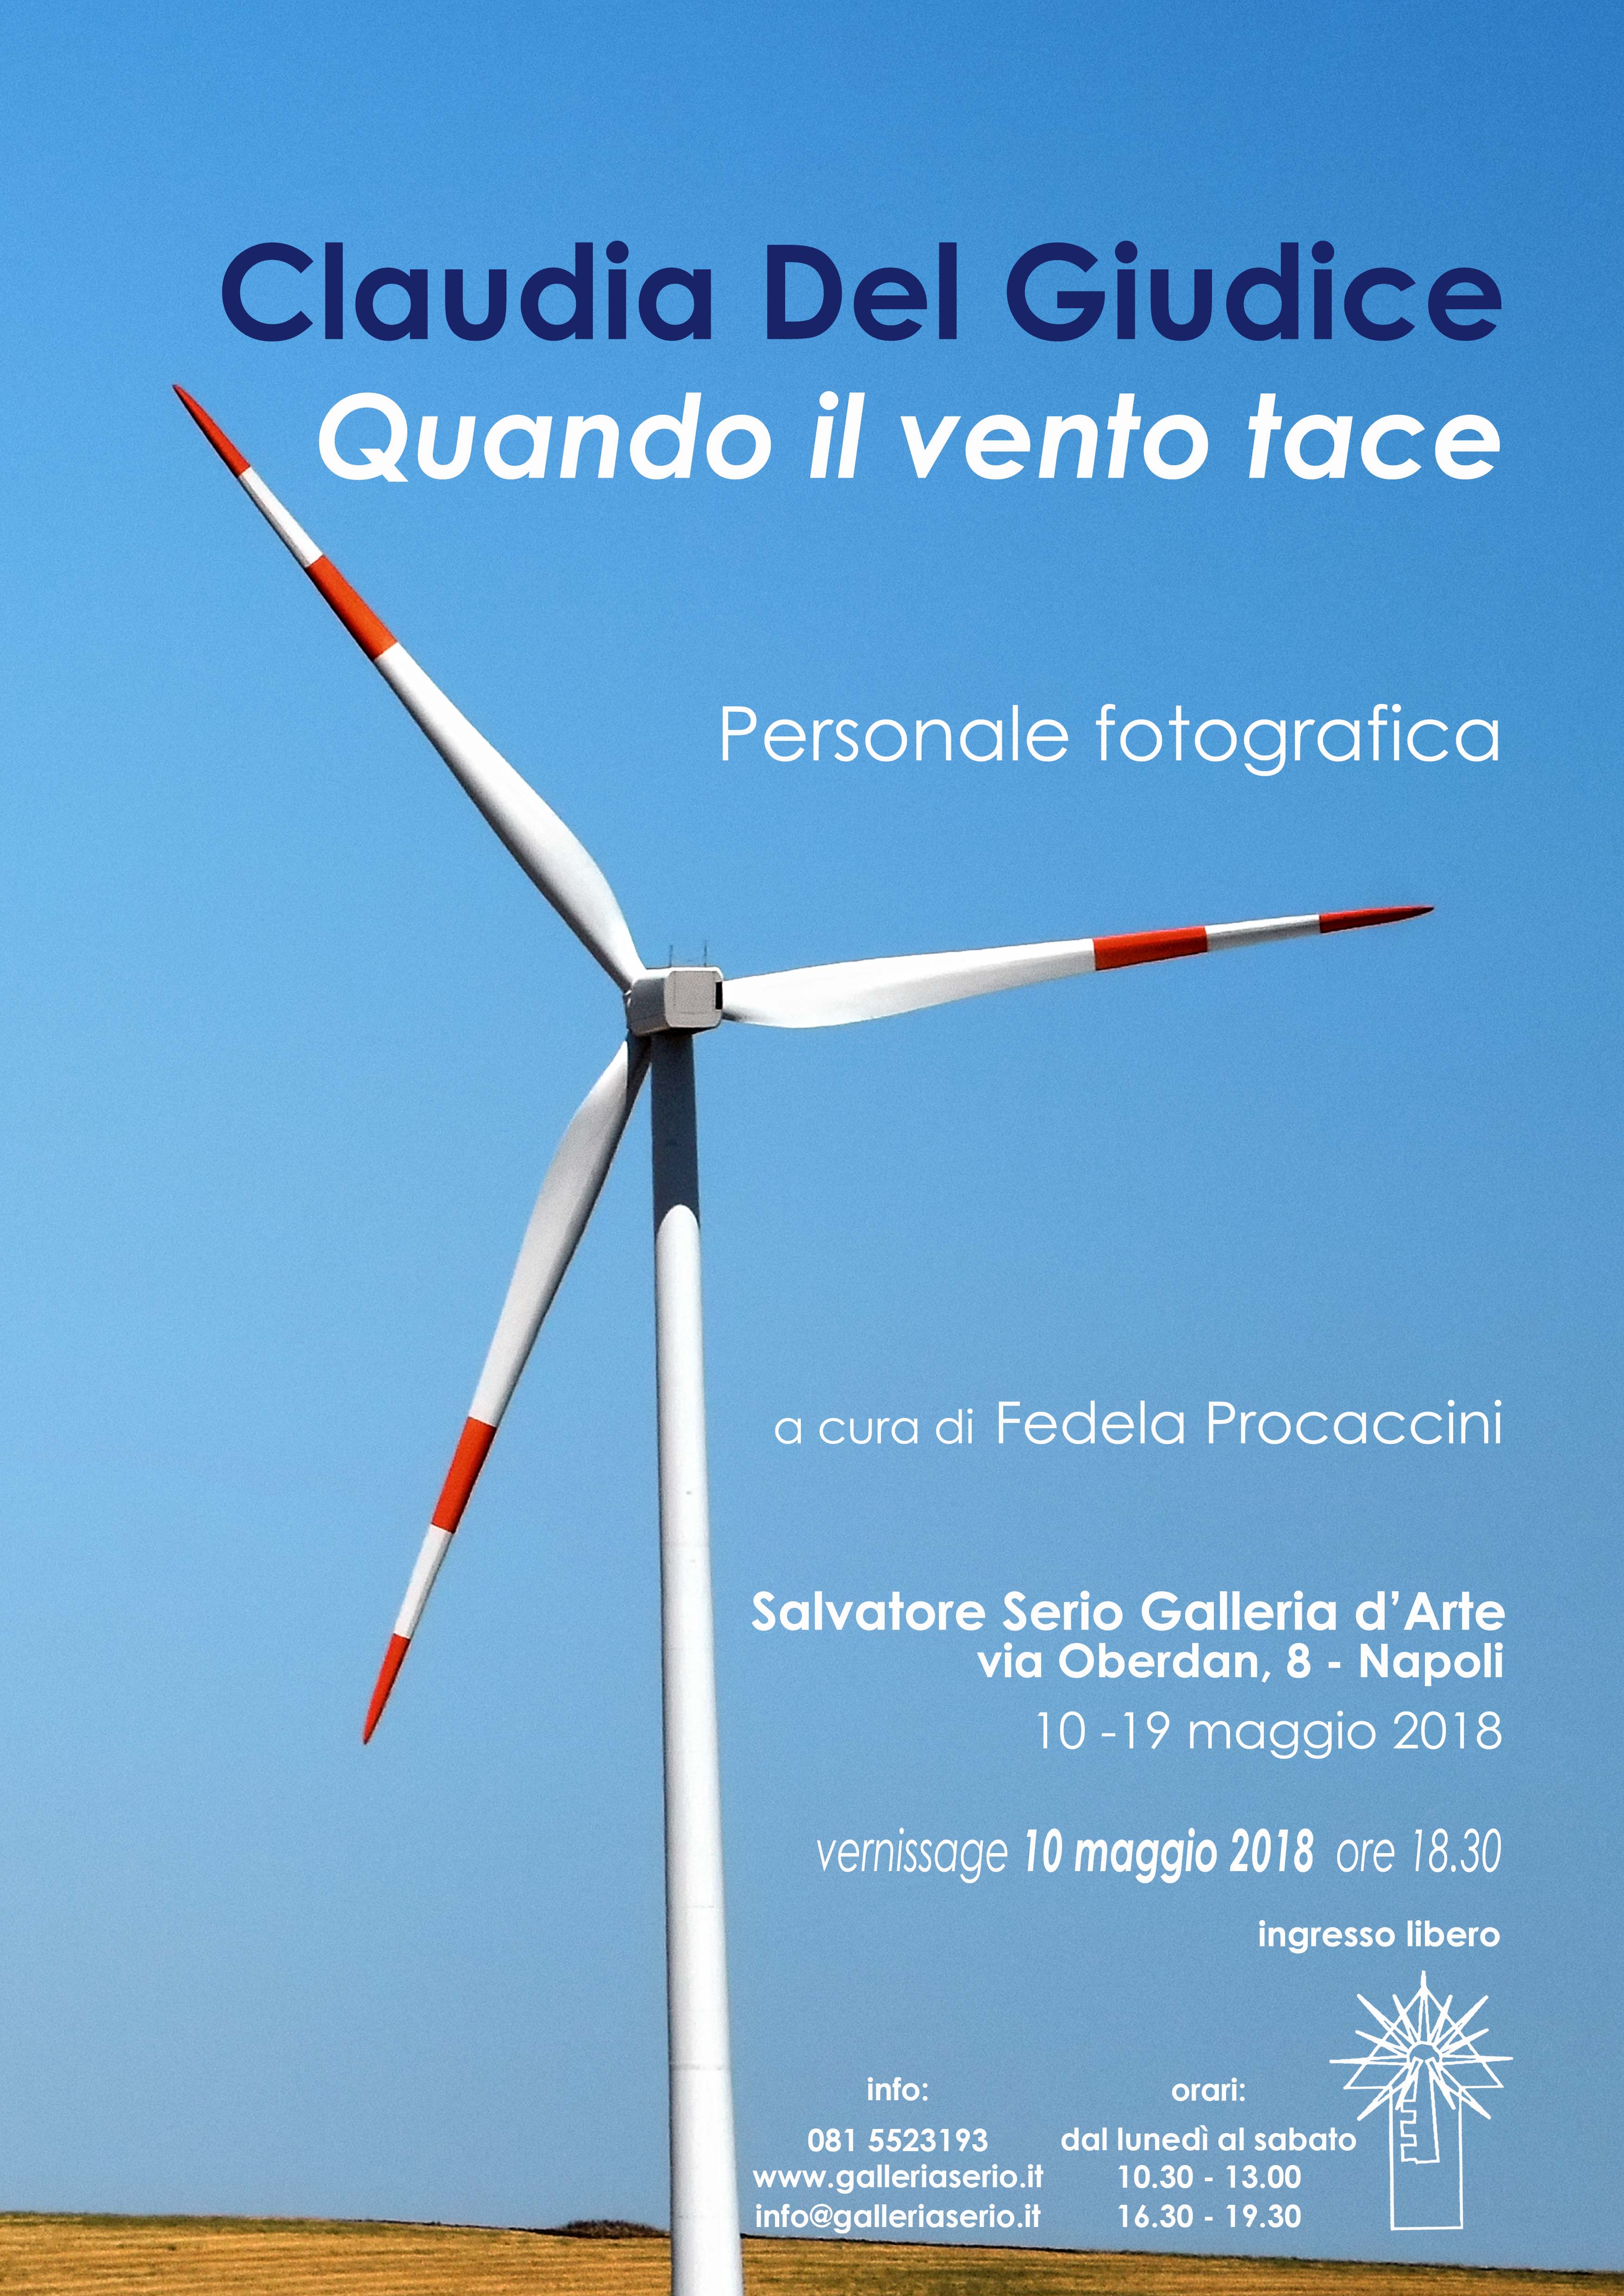 Quando il vento tace - Personale fotografica di Claudia Del Giudice c/o Salvatore Serio galleria d'arte,Napoli